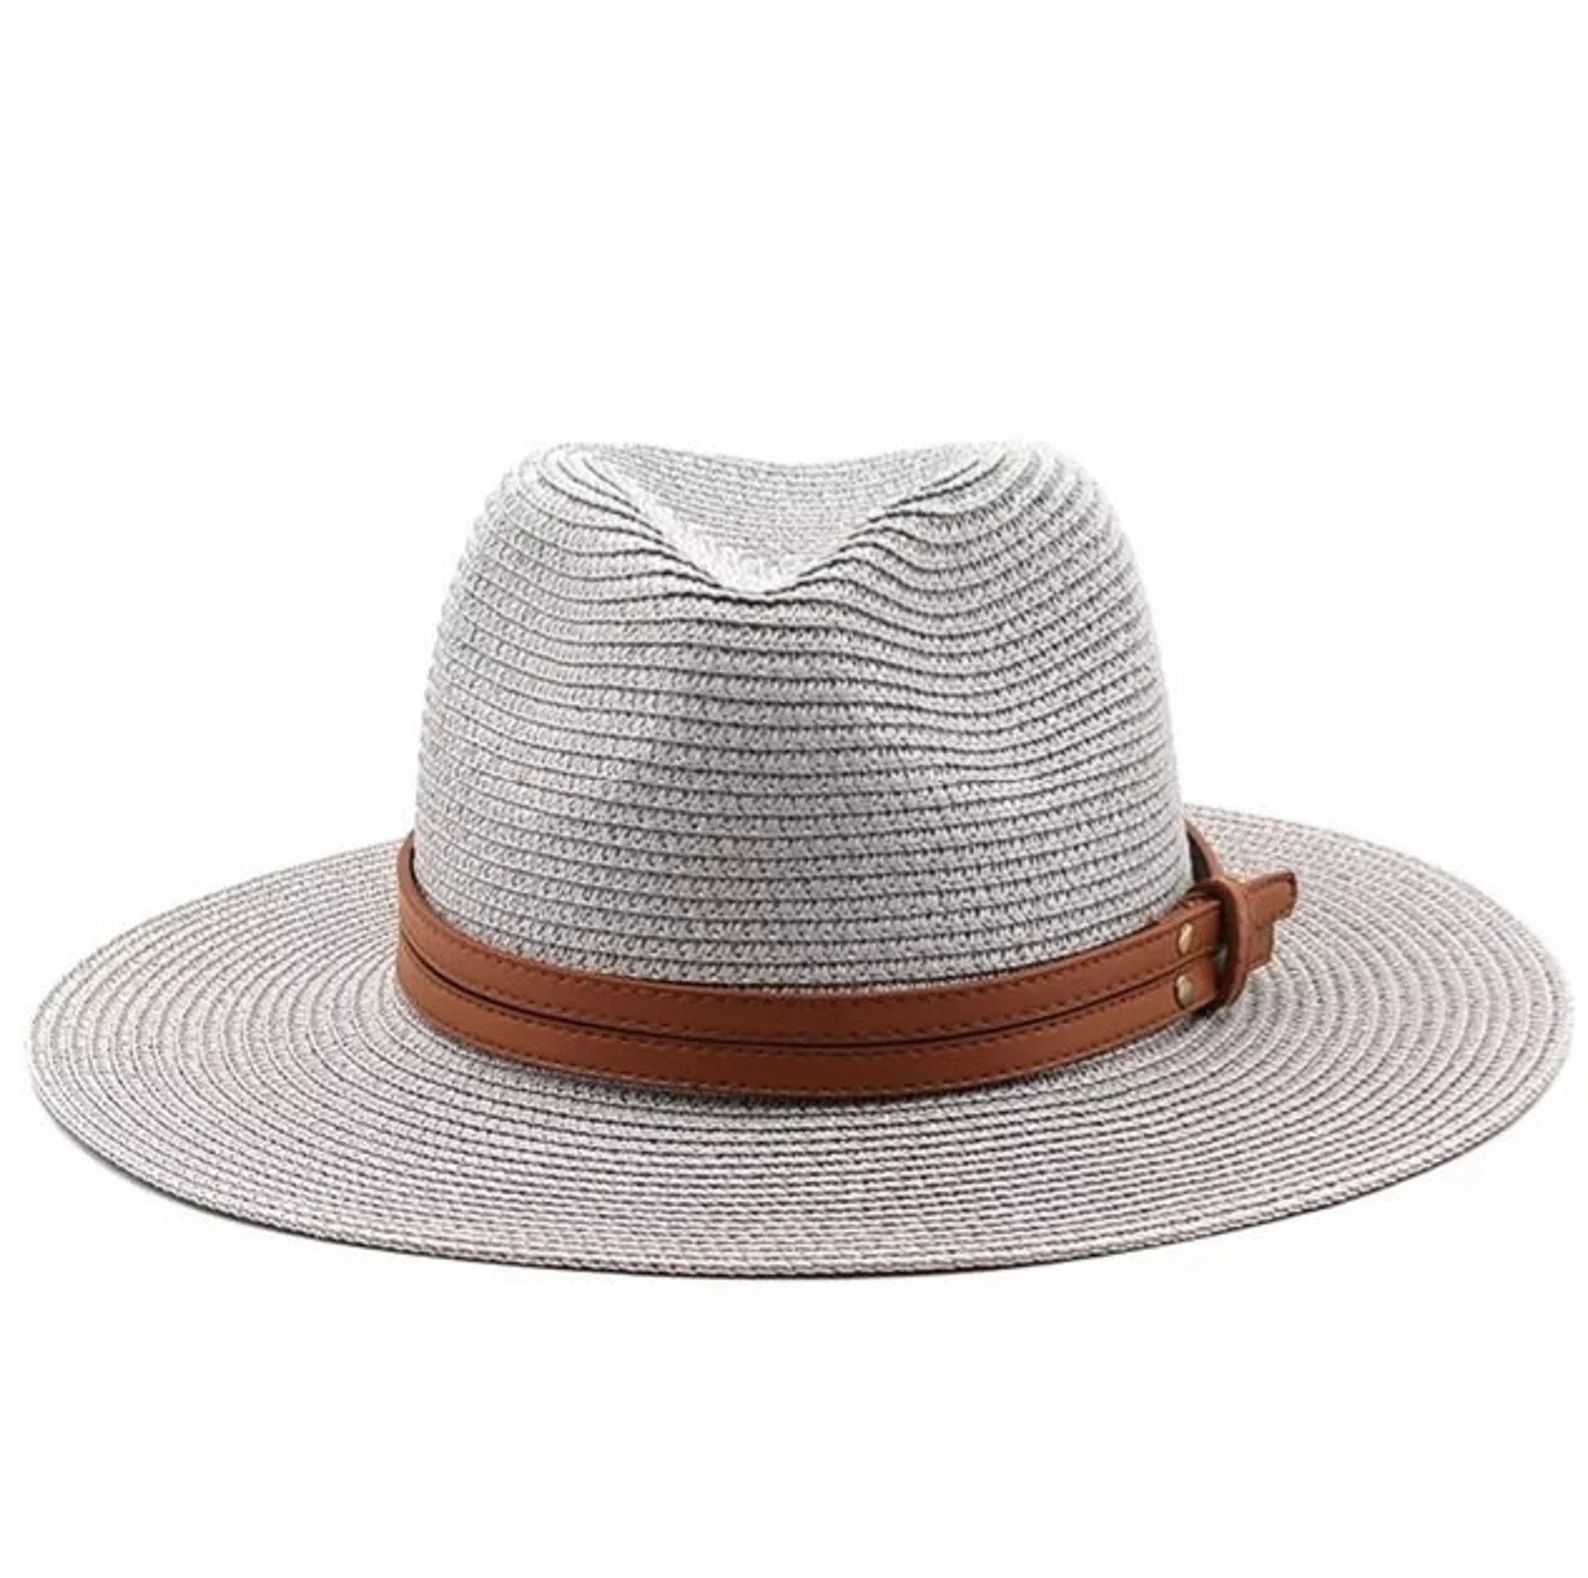 Lightweight Straw Panama Style Fedora Hat. Unisex. Lots of Colours - Etsy UK | Etsy (UK)